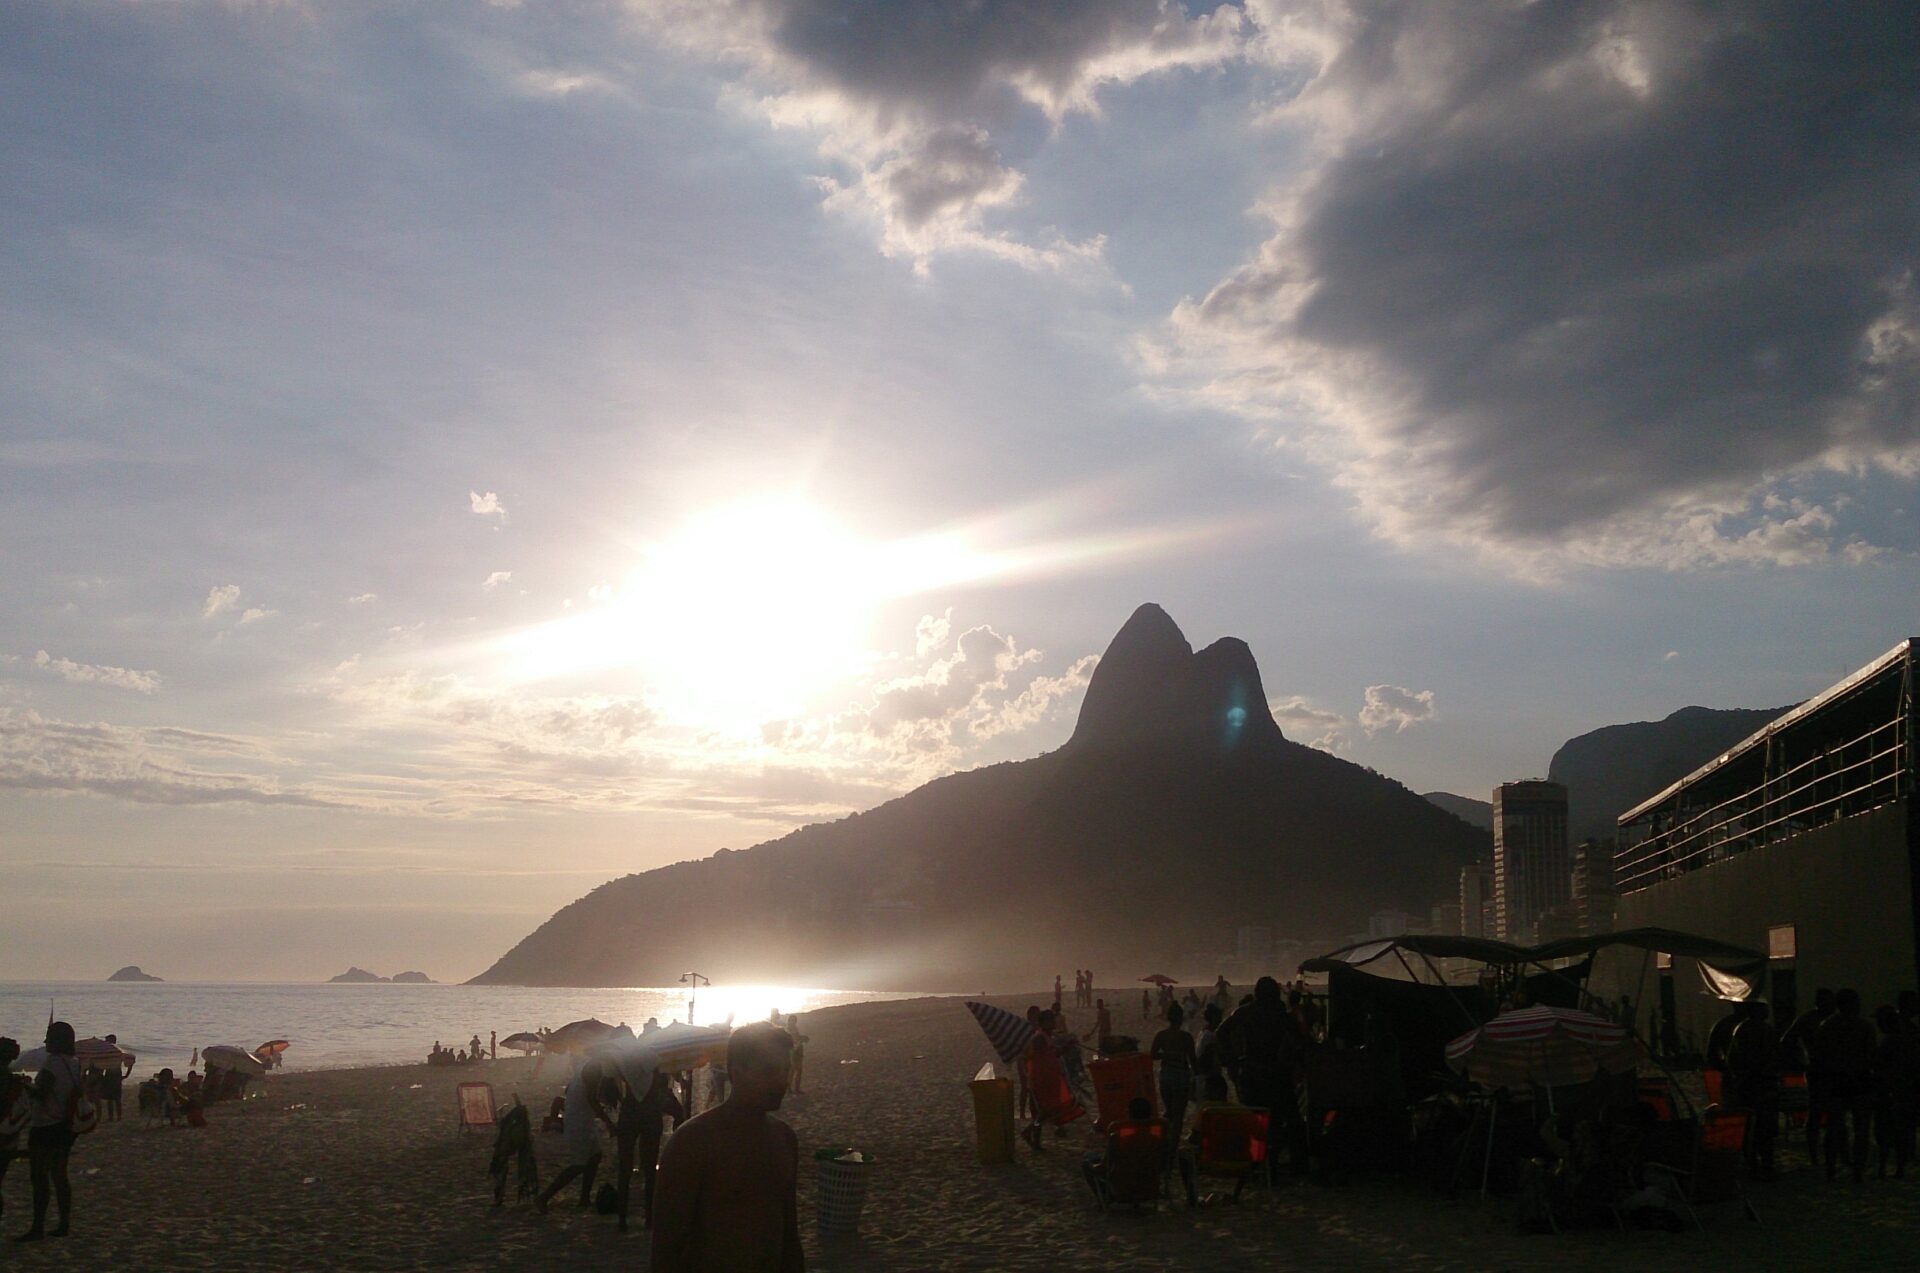 melhores-lugares-para-viajar-no-Brasil-sozinho-Rio-de-Janeiro-Ipanema Os 10 melhores lugares do Brasil para se viajar sozinho (a) 